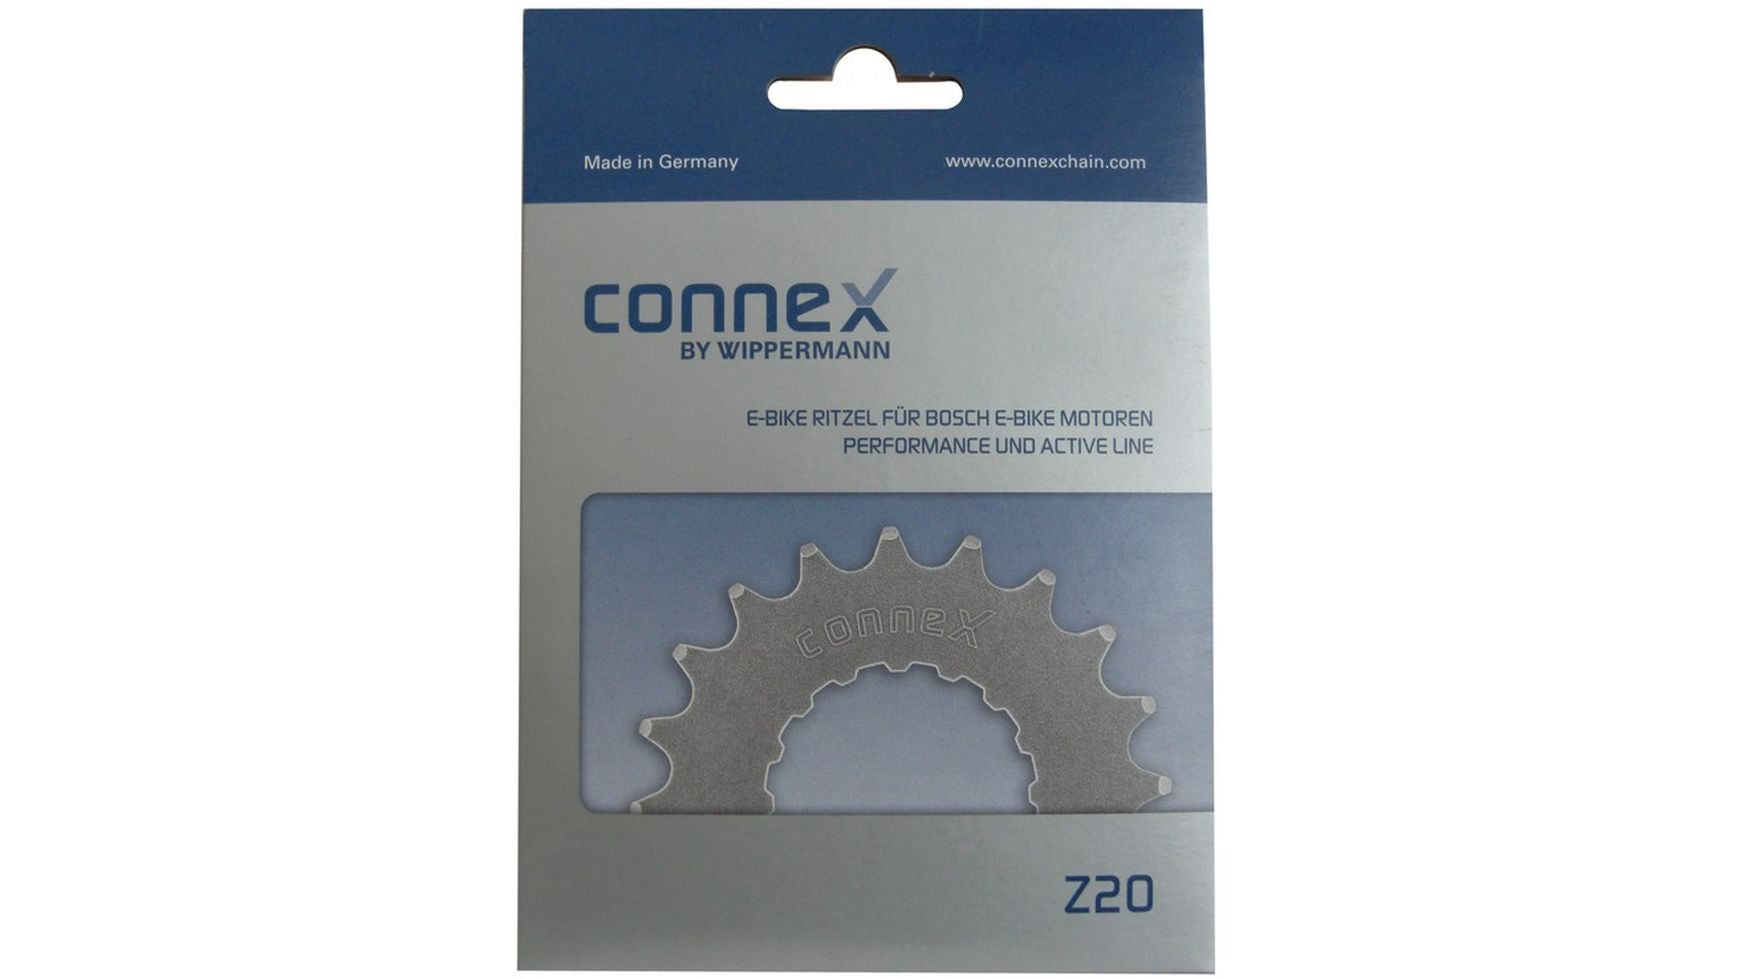 Connex 14 Zähne Ritzel Bosch von Connex